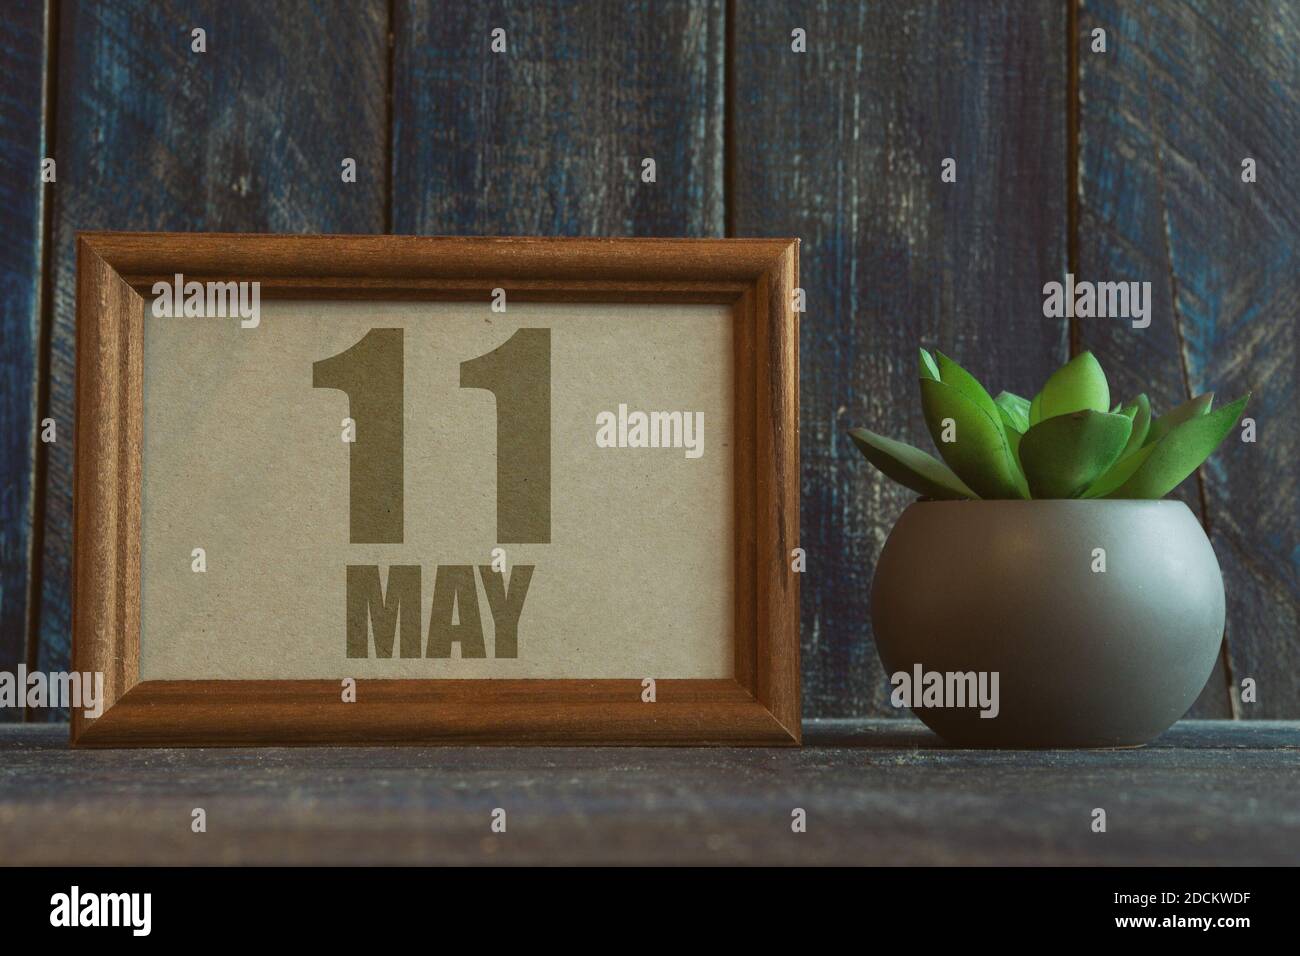 Mai 11th. Tag 11 des Monats, Datum im Rahmen neben Sukkulente auf hölzernen Hintergrund Frühlingsmonat, Tag des Jahres Konzept Stockfoto